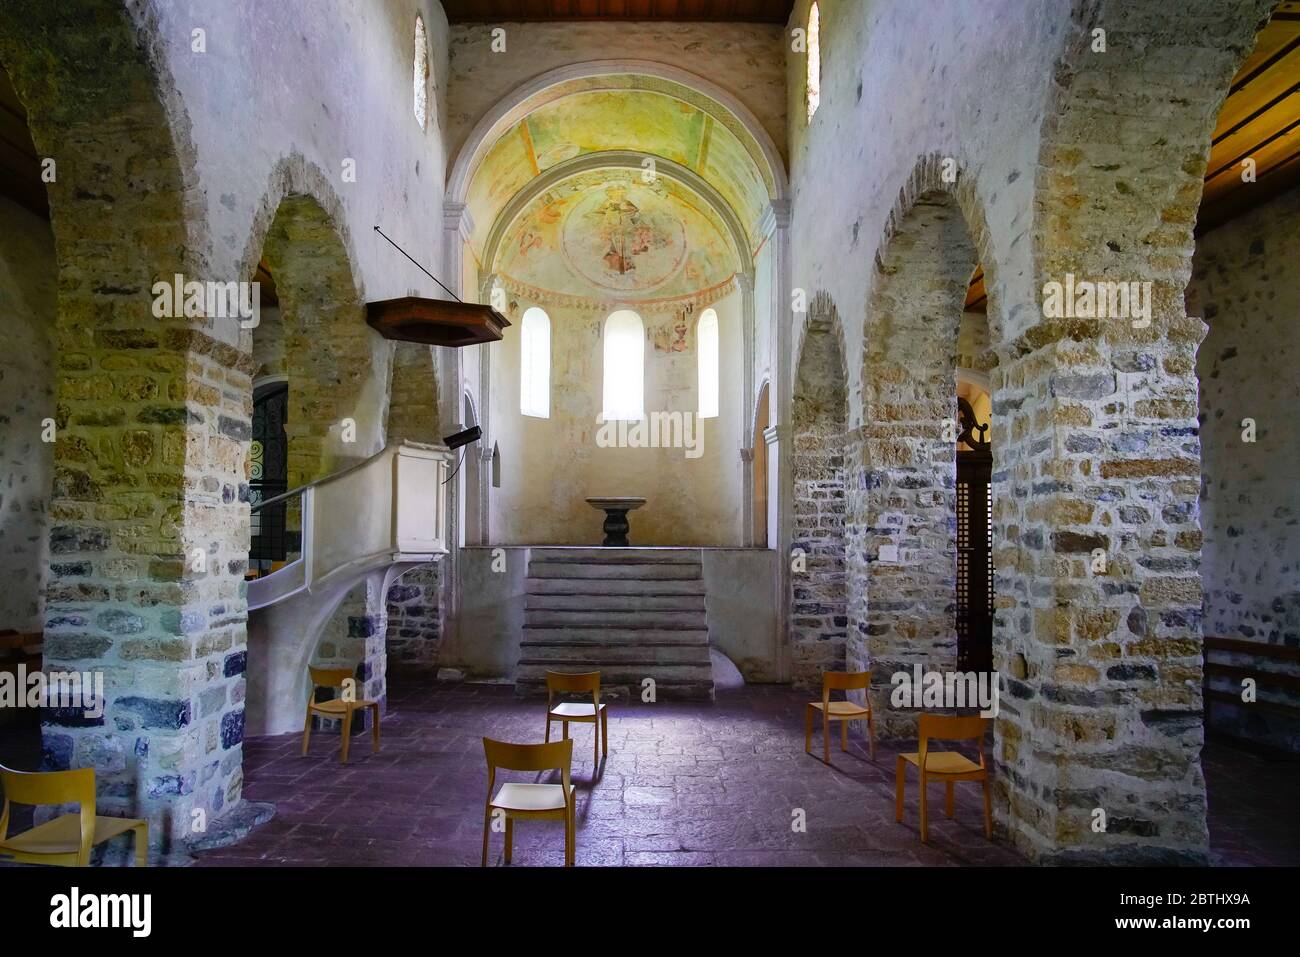 À l'intérieur de l'église du château de Spiez. L'église a 1000 ans dans le style roman ancien, le lac Thun, l'Oberland bernois, Berne, Suisse. Banque D'Images